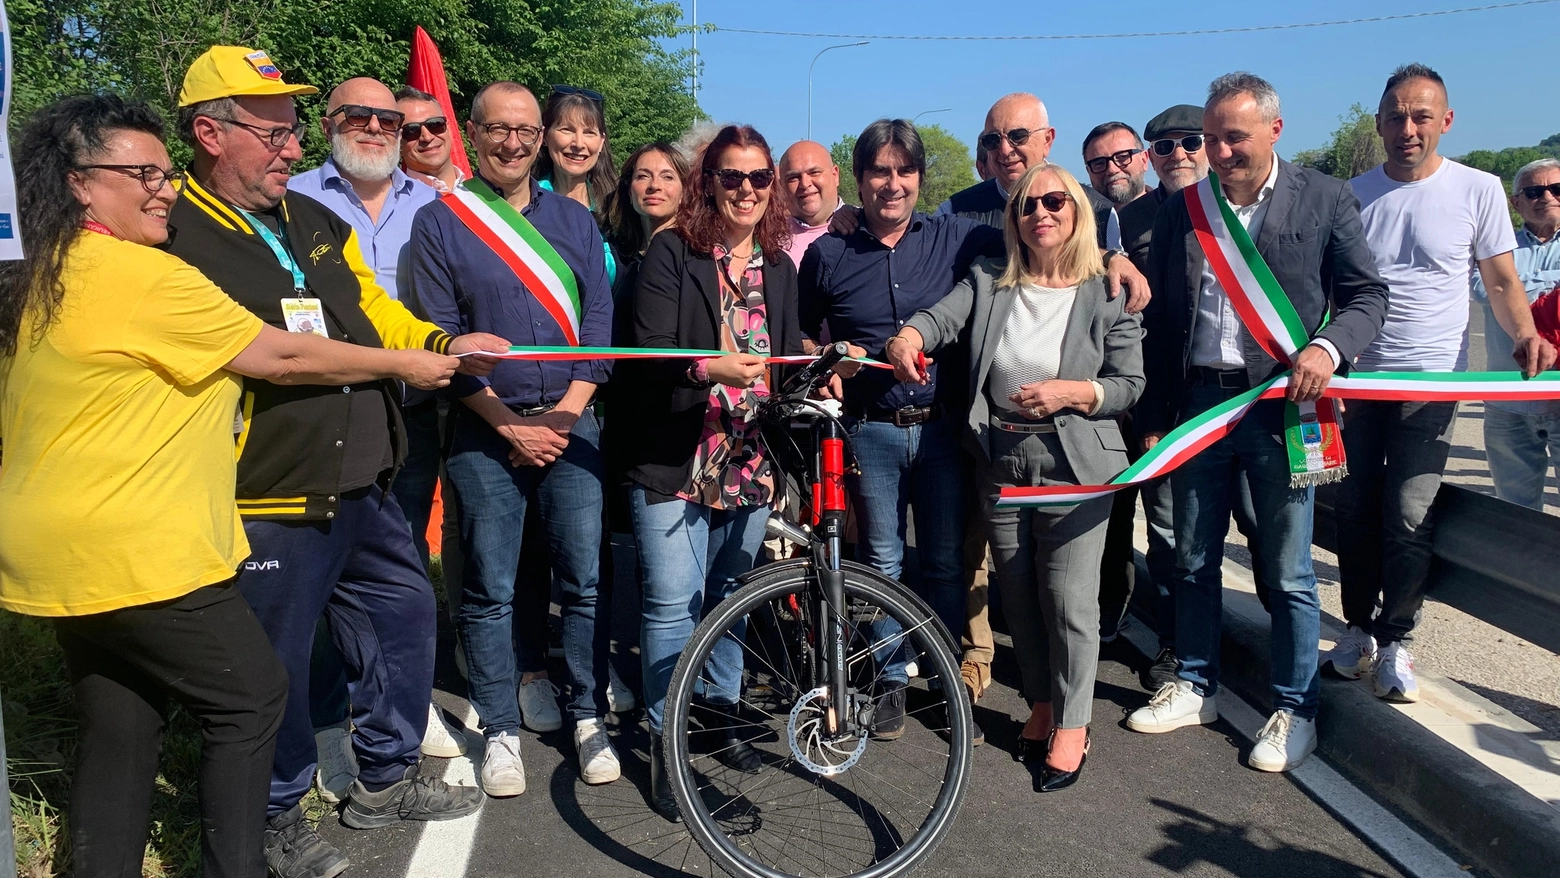 La pista ciclopedonale, lunga 2.550 metri, collega Colombarone e Case Badioli, Pesaro e Gabicce. Il sindaco Ricci: “migliorerà la sicurezza in una zona molto trafficata”